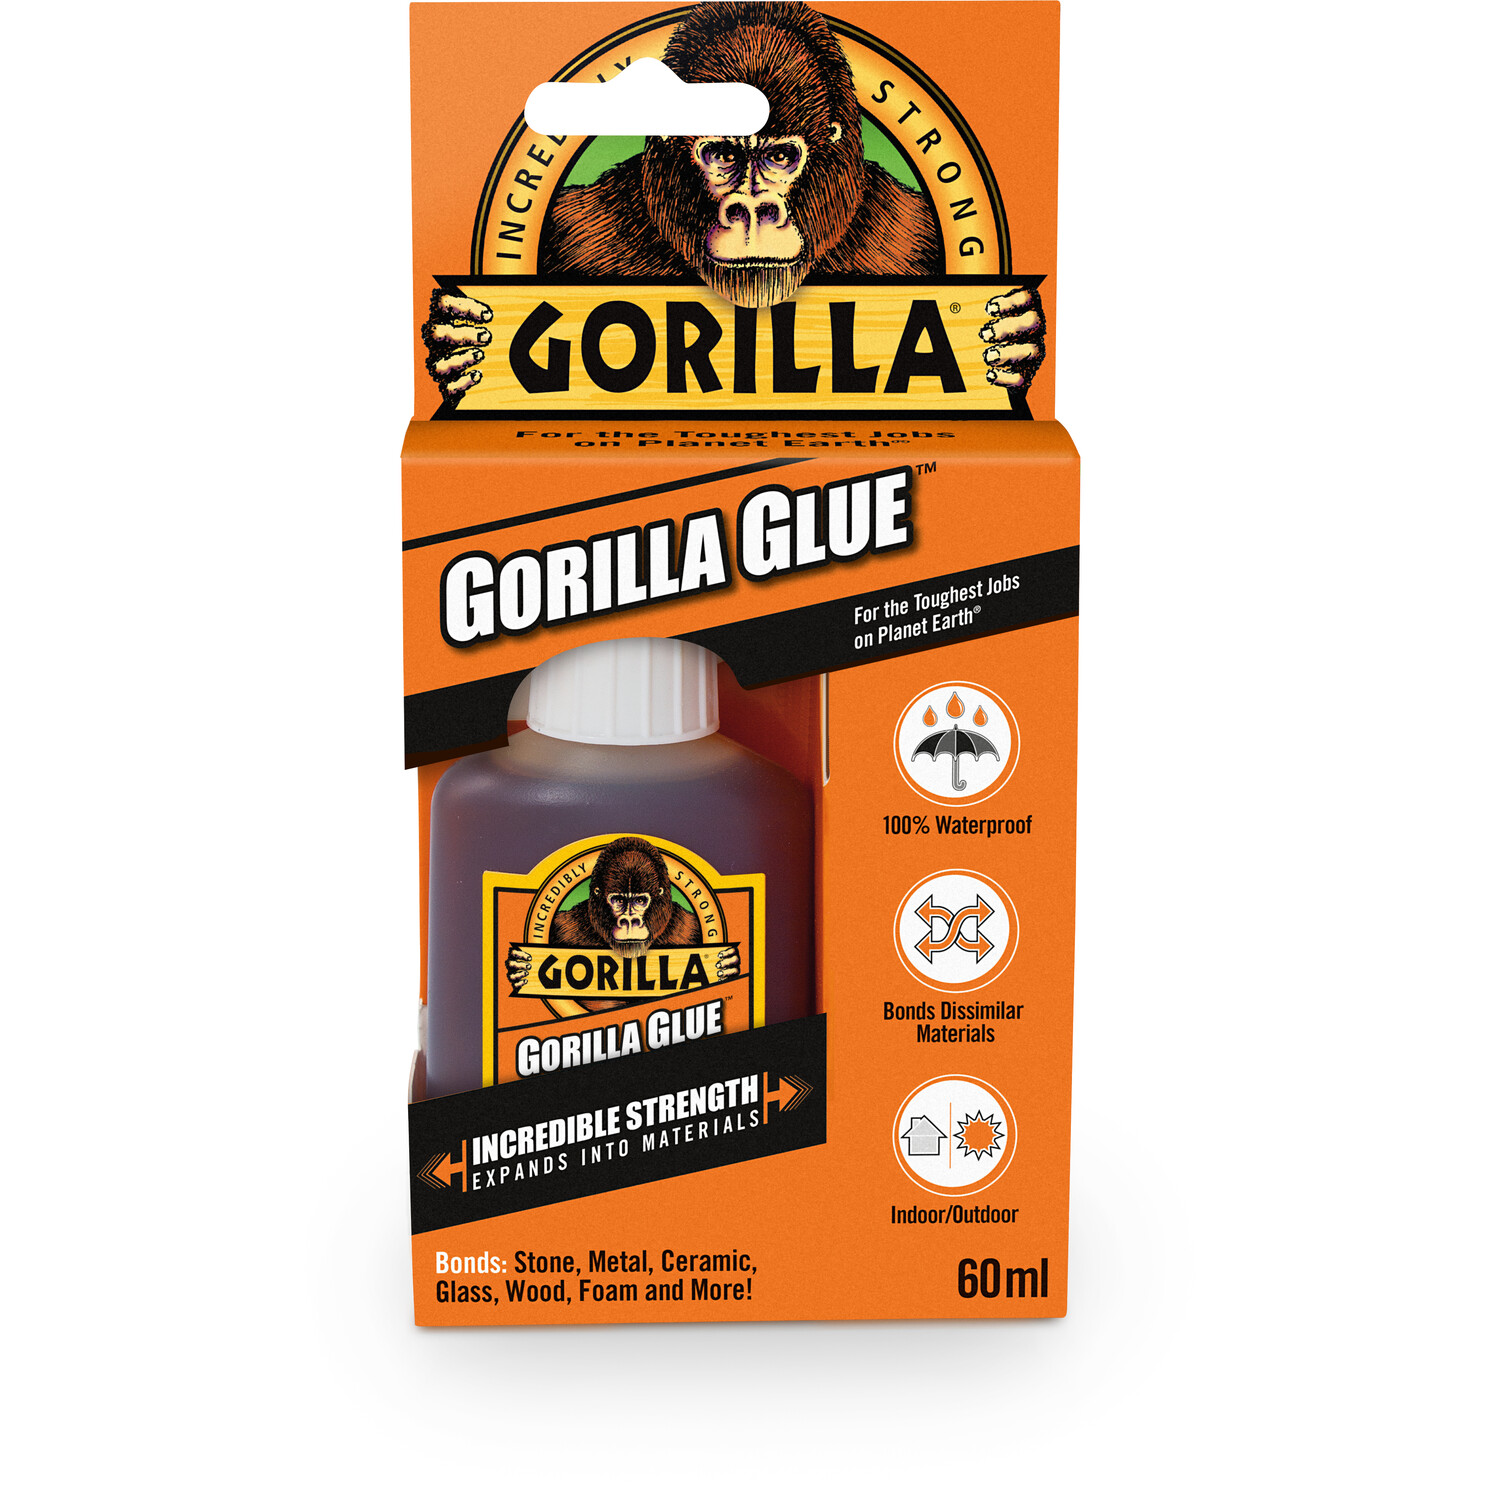 Gorilla Glue 60ml Image 2